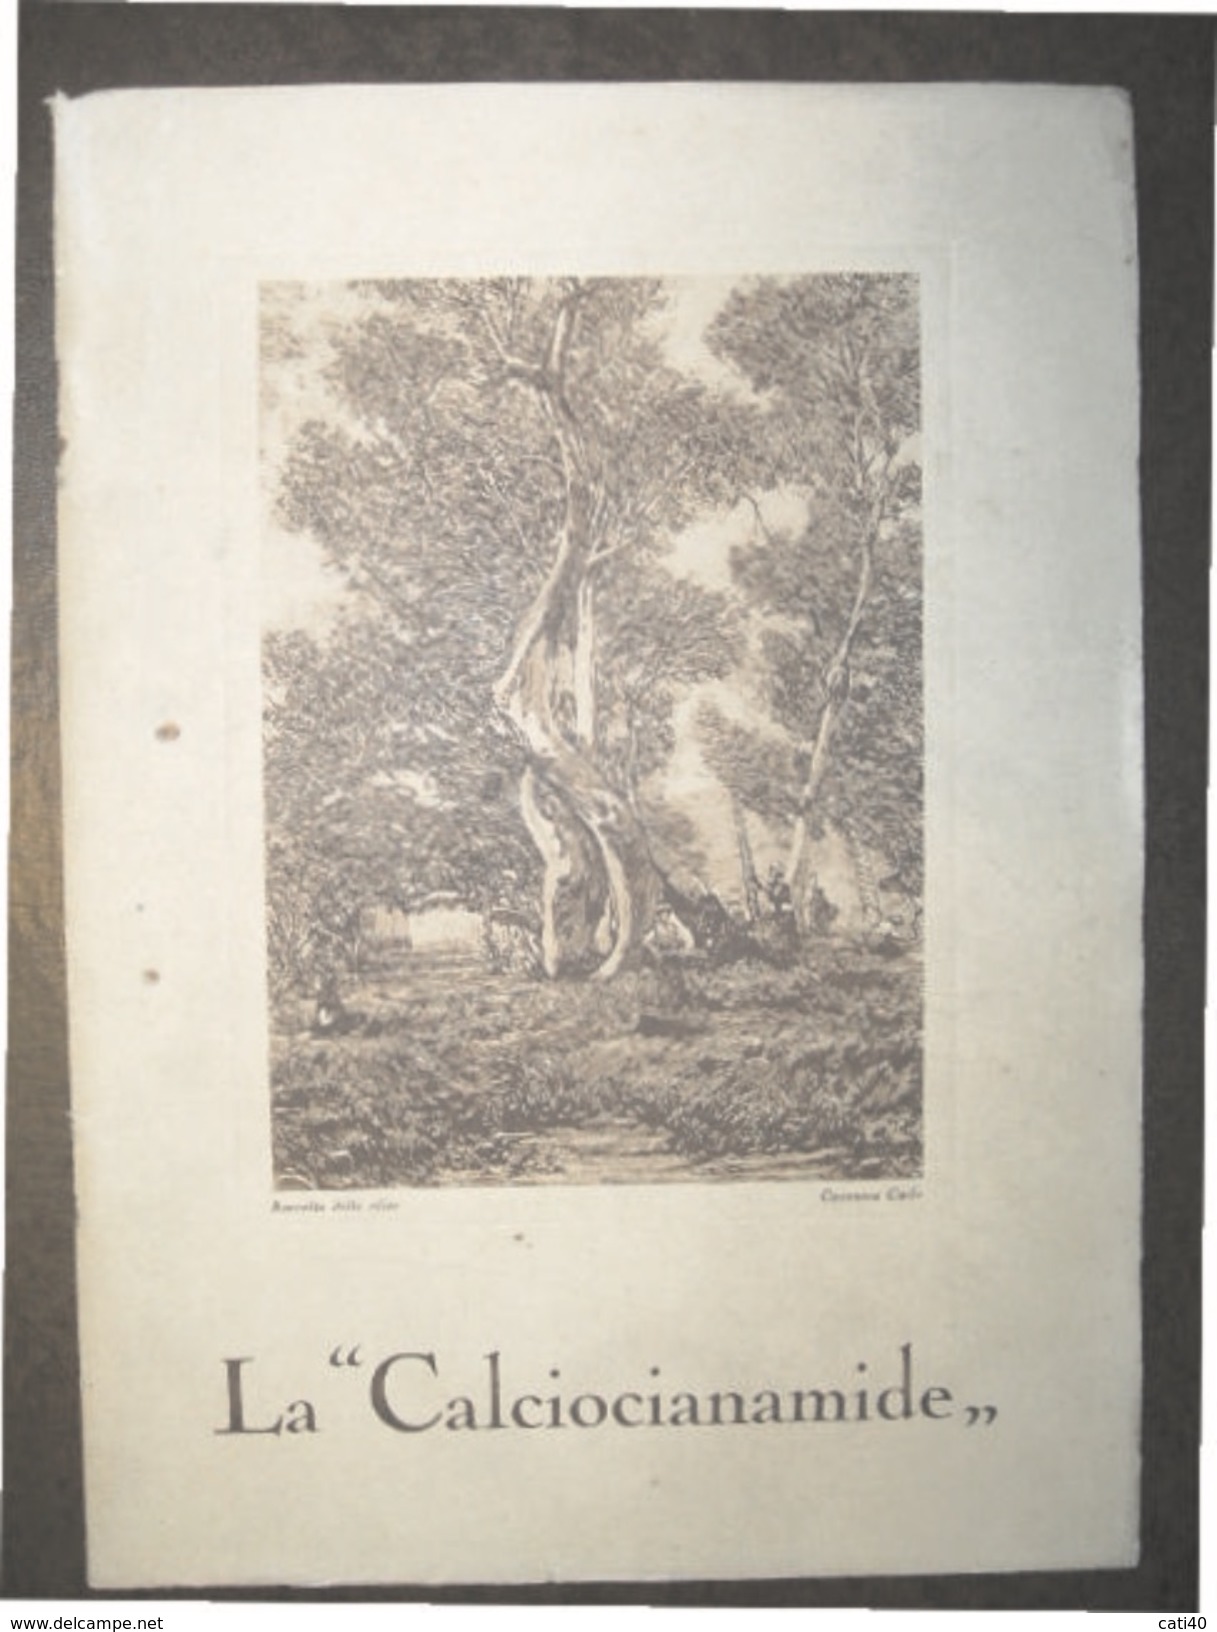 AGRICOLTURA  LA "CALCIOCIANAMIDE"  PROF.F.ZAGO - DR.S.GADDINI  TIP. RIZZOLI 1926 STAMPA RACCOLTA DELLE OLIVE DI CASANOVA - Jardinería